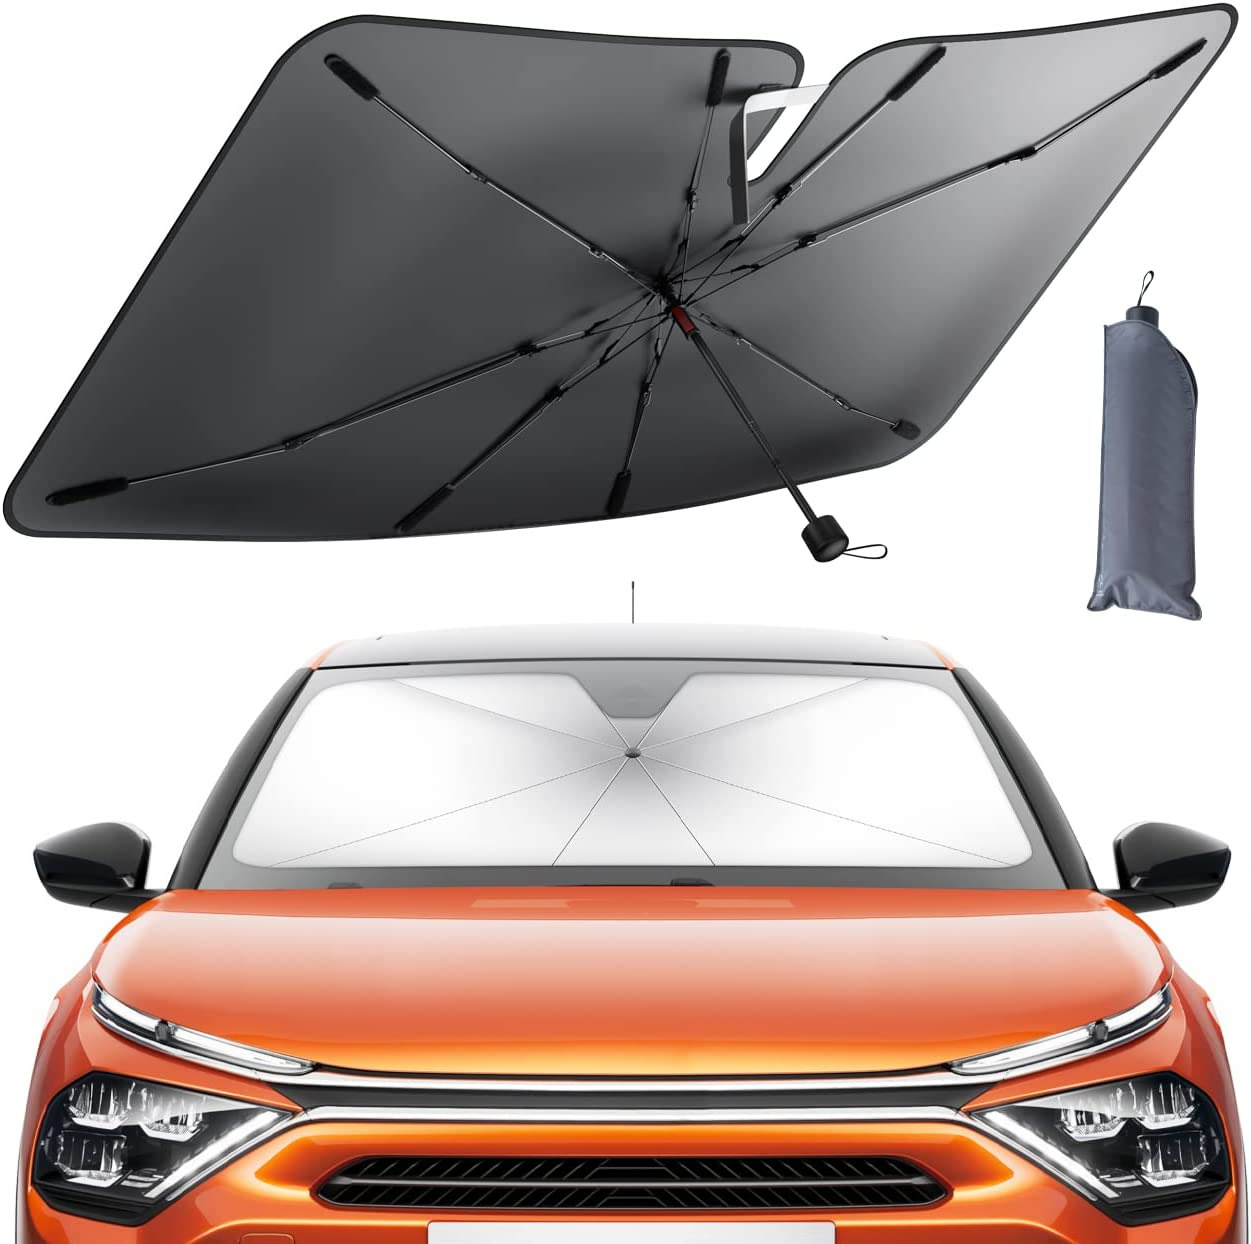 Car Windshield Sunshade Umbrella - Foldable Car Windshield Sun Shade Cover, 5 La